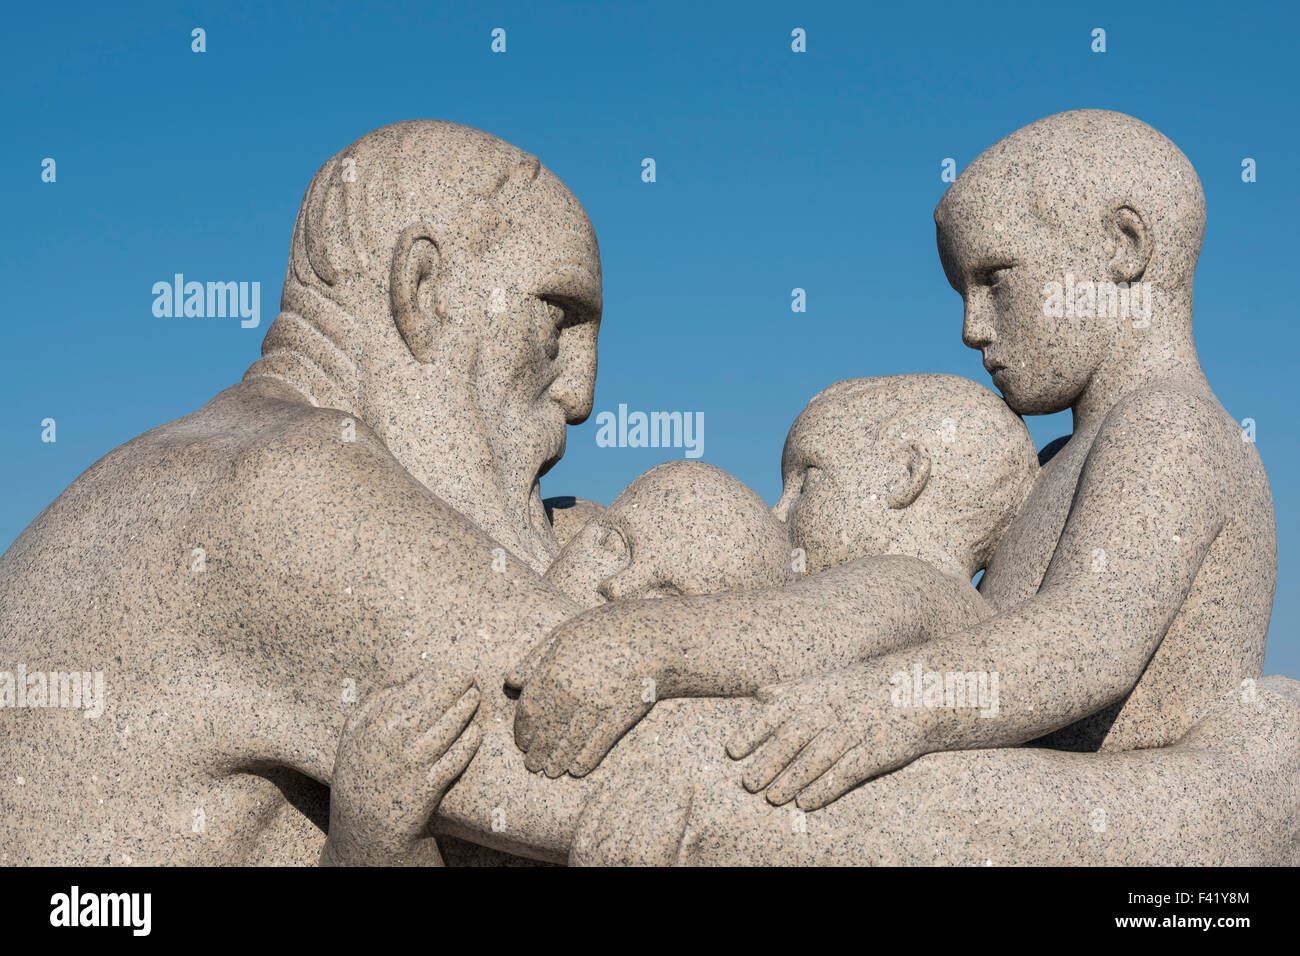 Vieil homme et trois enfants, sculpture en granit de Gustav Vigeland, Parc de Sculptures de Vigeland, Frognerparken, Frogner, Oslo, Norvège Banque D'Images